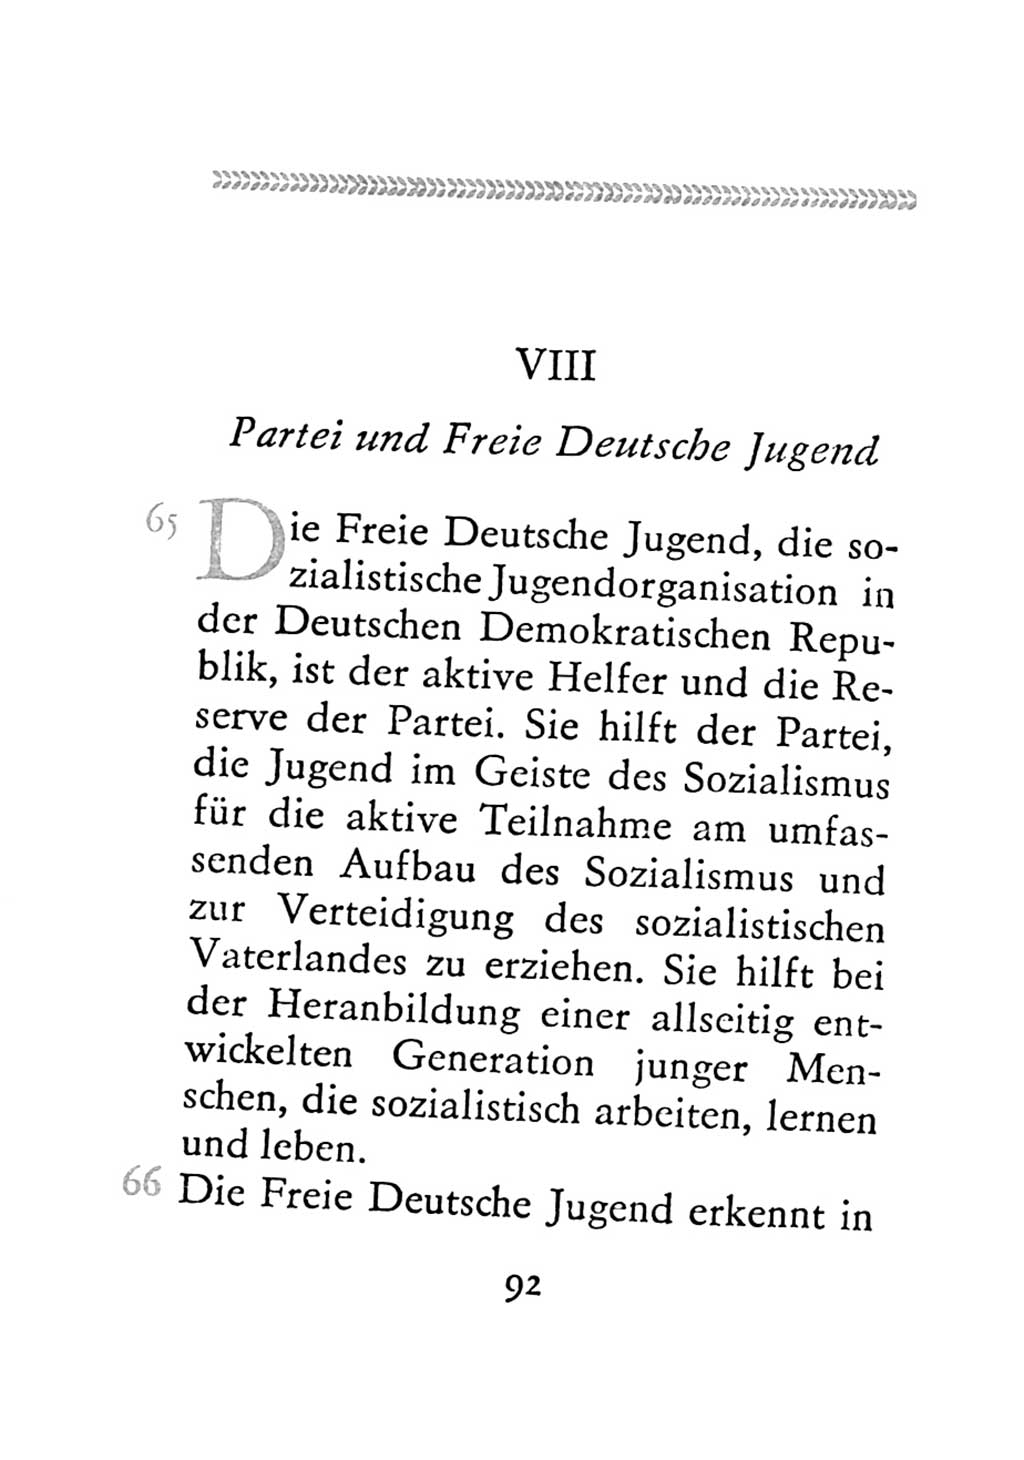 Statut der Sozialistischen Einheitspartei Deutschlands (SED) 1971, Seite 92 (St. SED DDR 1971, S. 92)